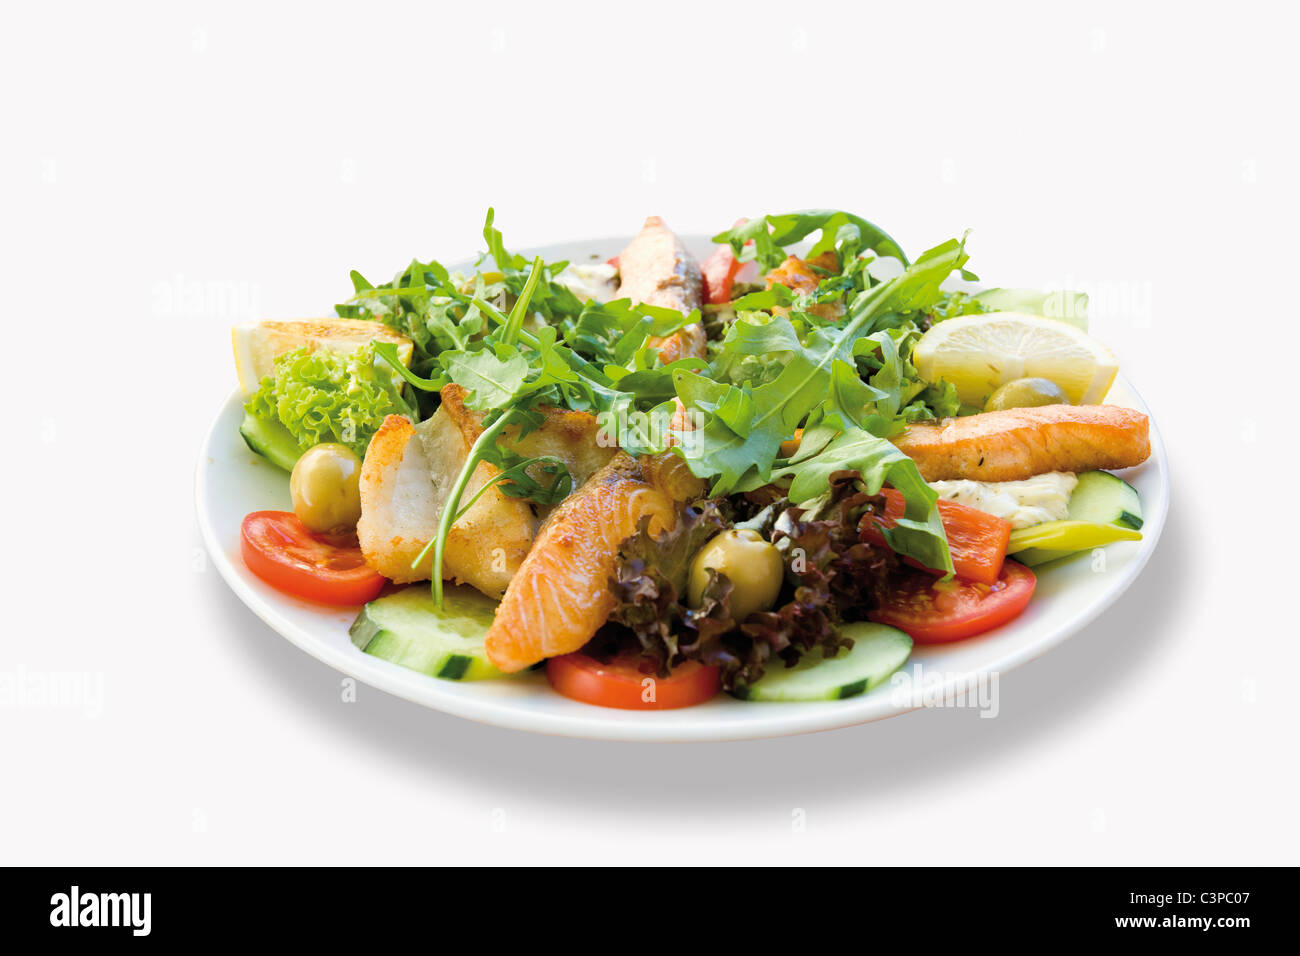 Le poisson frit garni de saumon salade mixte et le sandre en plaque sur fond blanc Banque D'Images